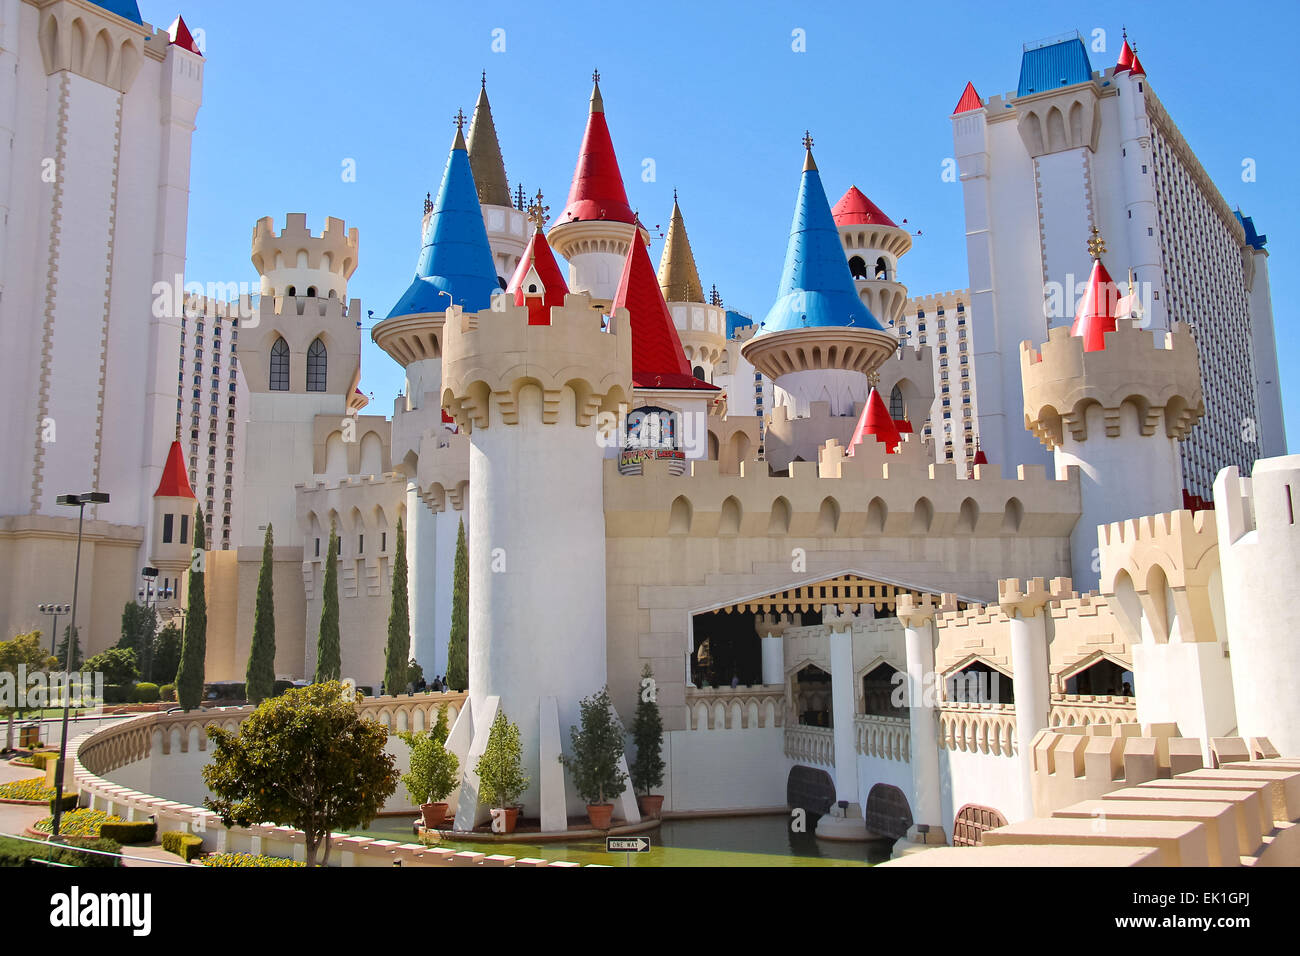 Las Vegas, Nevada, USA - 21. Oktober 2013: Die Excalibur Hotel and Casino in Las Vegas. Excalibur wurde 1990 eröffnet und bietet nun seinen Kunden 100.000 qm Casino mit über 1700 Spielautomaten Stockfoto